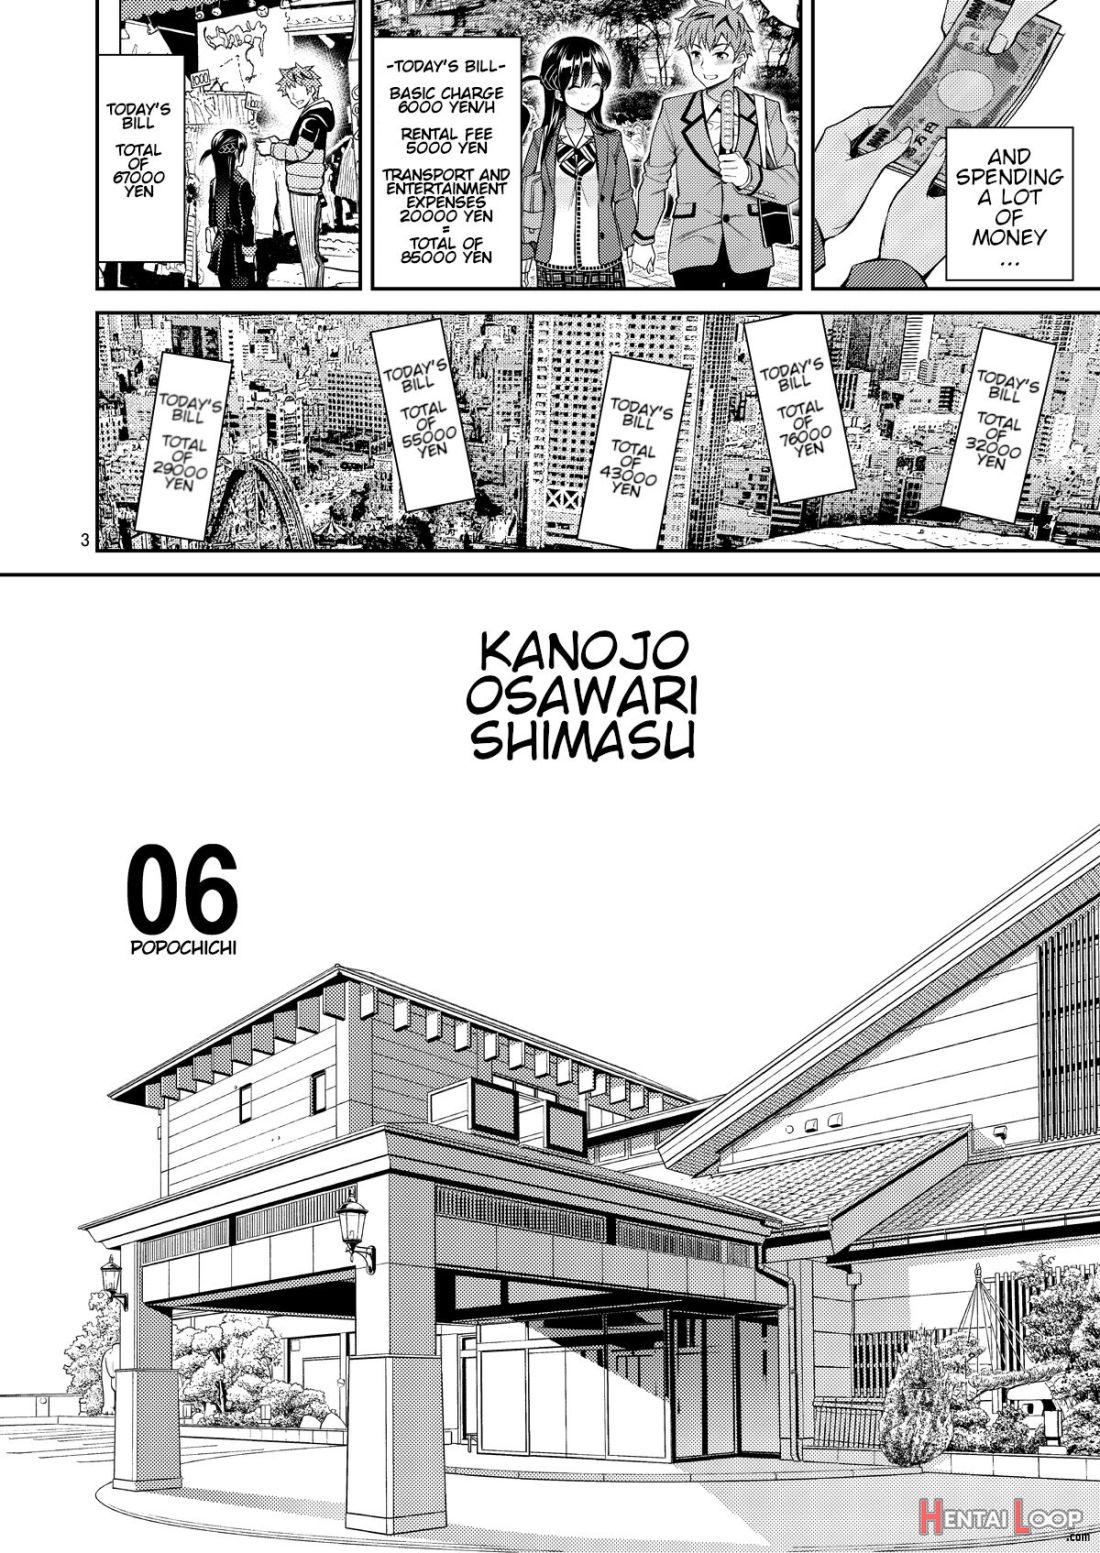 Rental Kanojo Osawari Shimasu 06 page 3